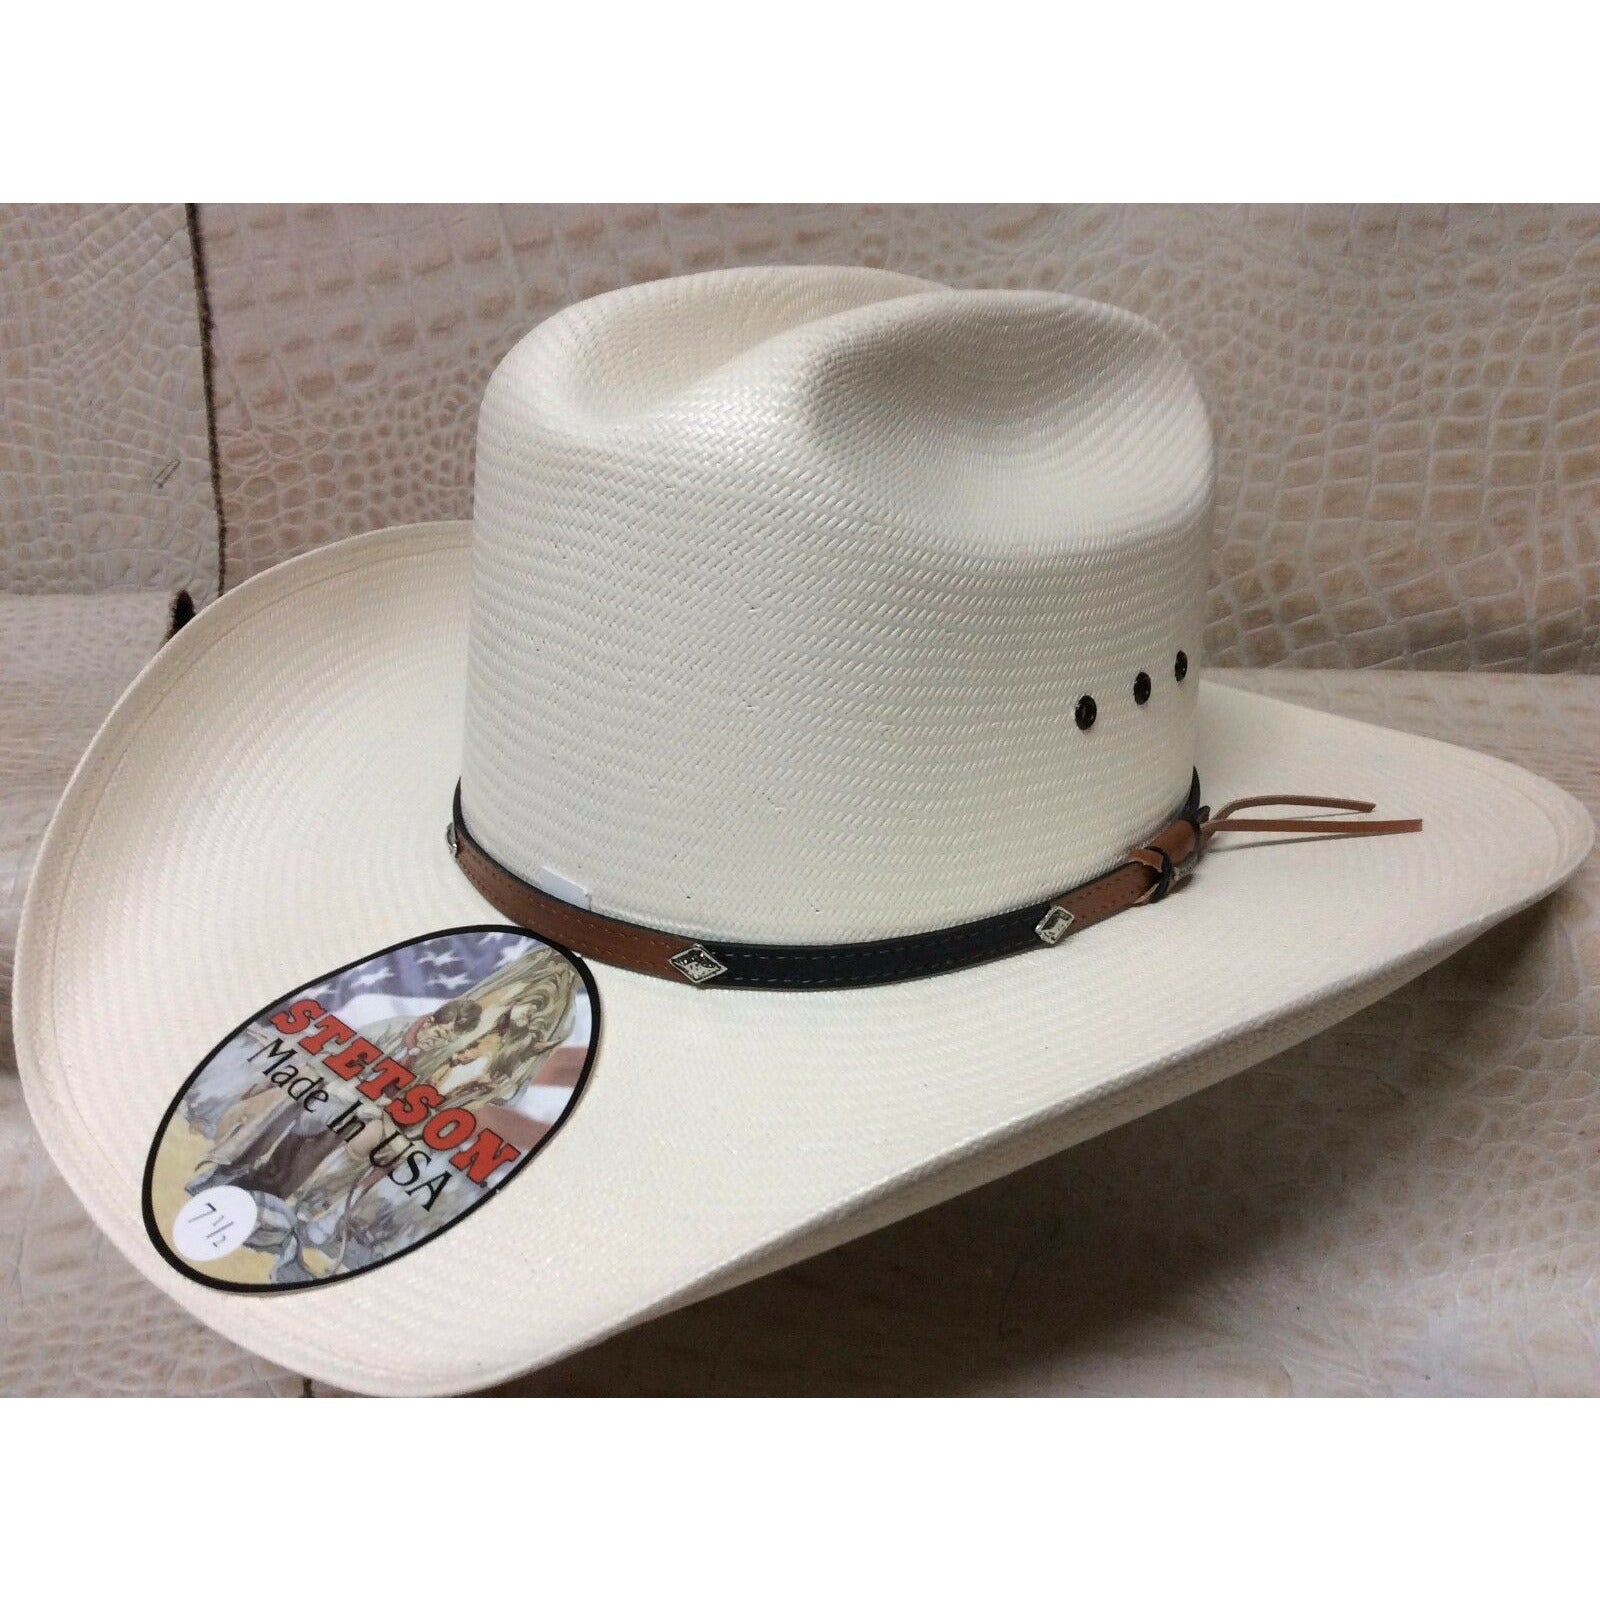 Stetson 10x Grant Western Classic Cowboy Straw Hat - CWesternwear